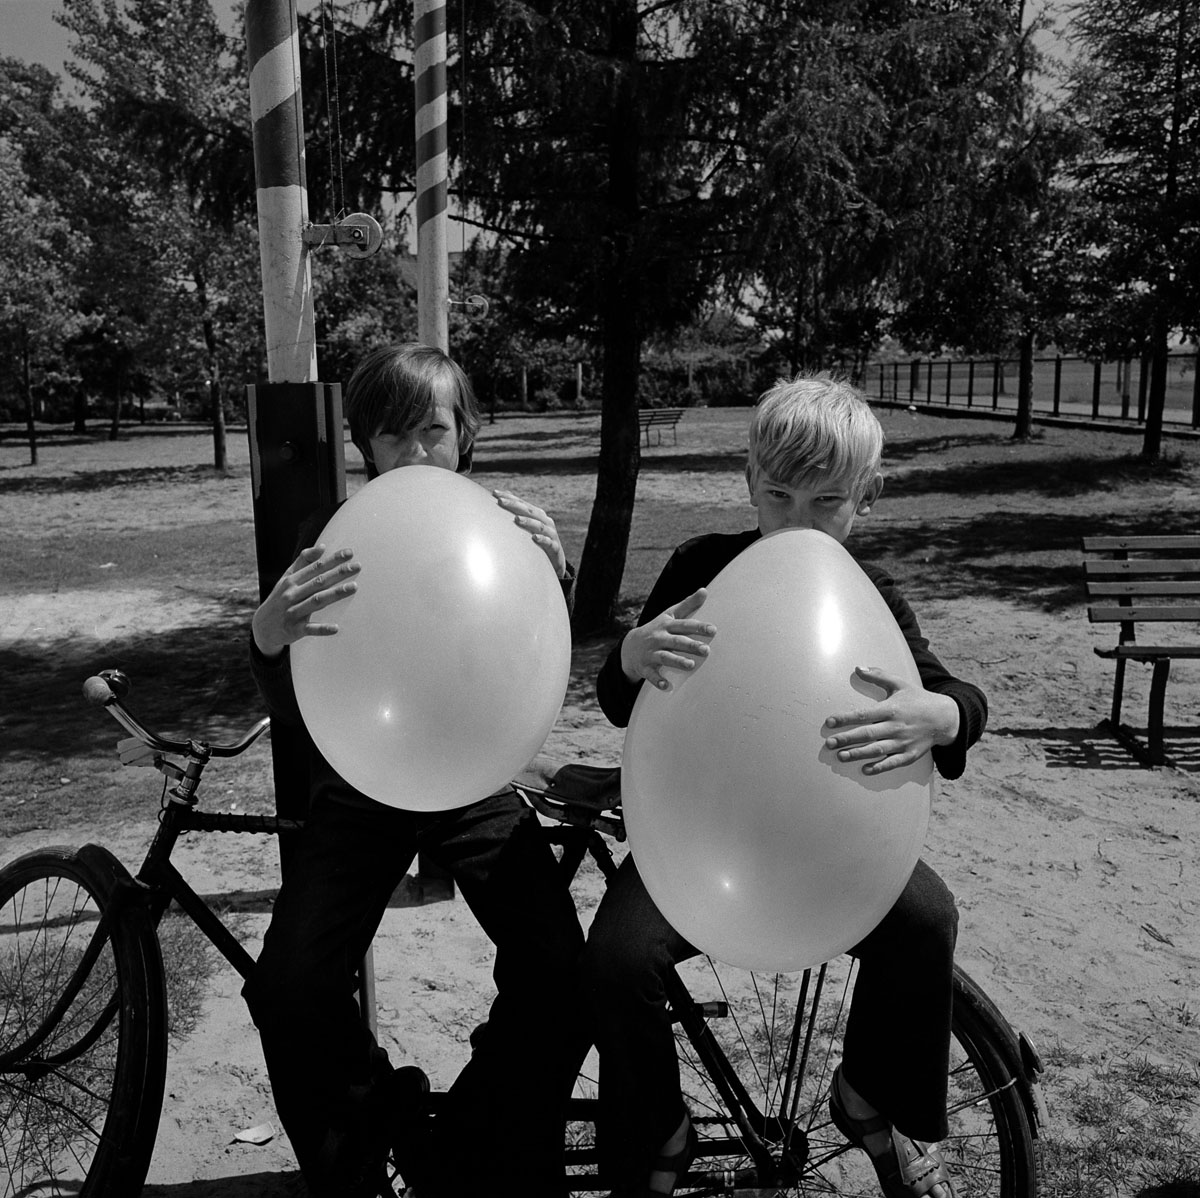 Balloon boys